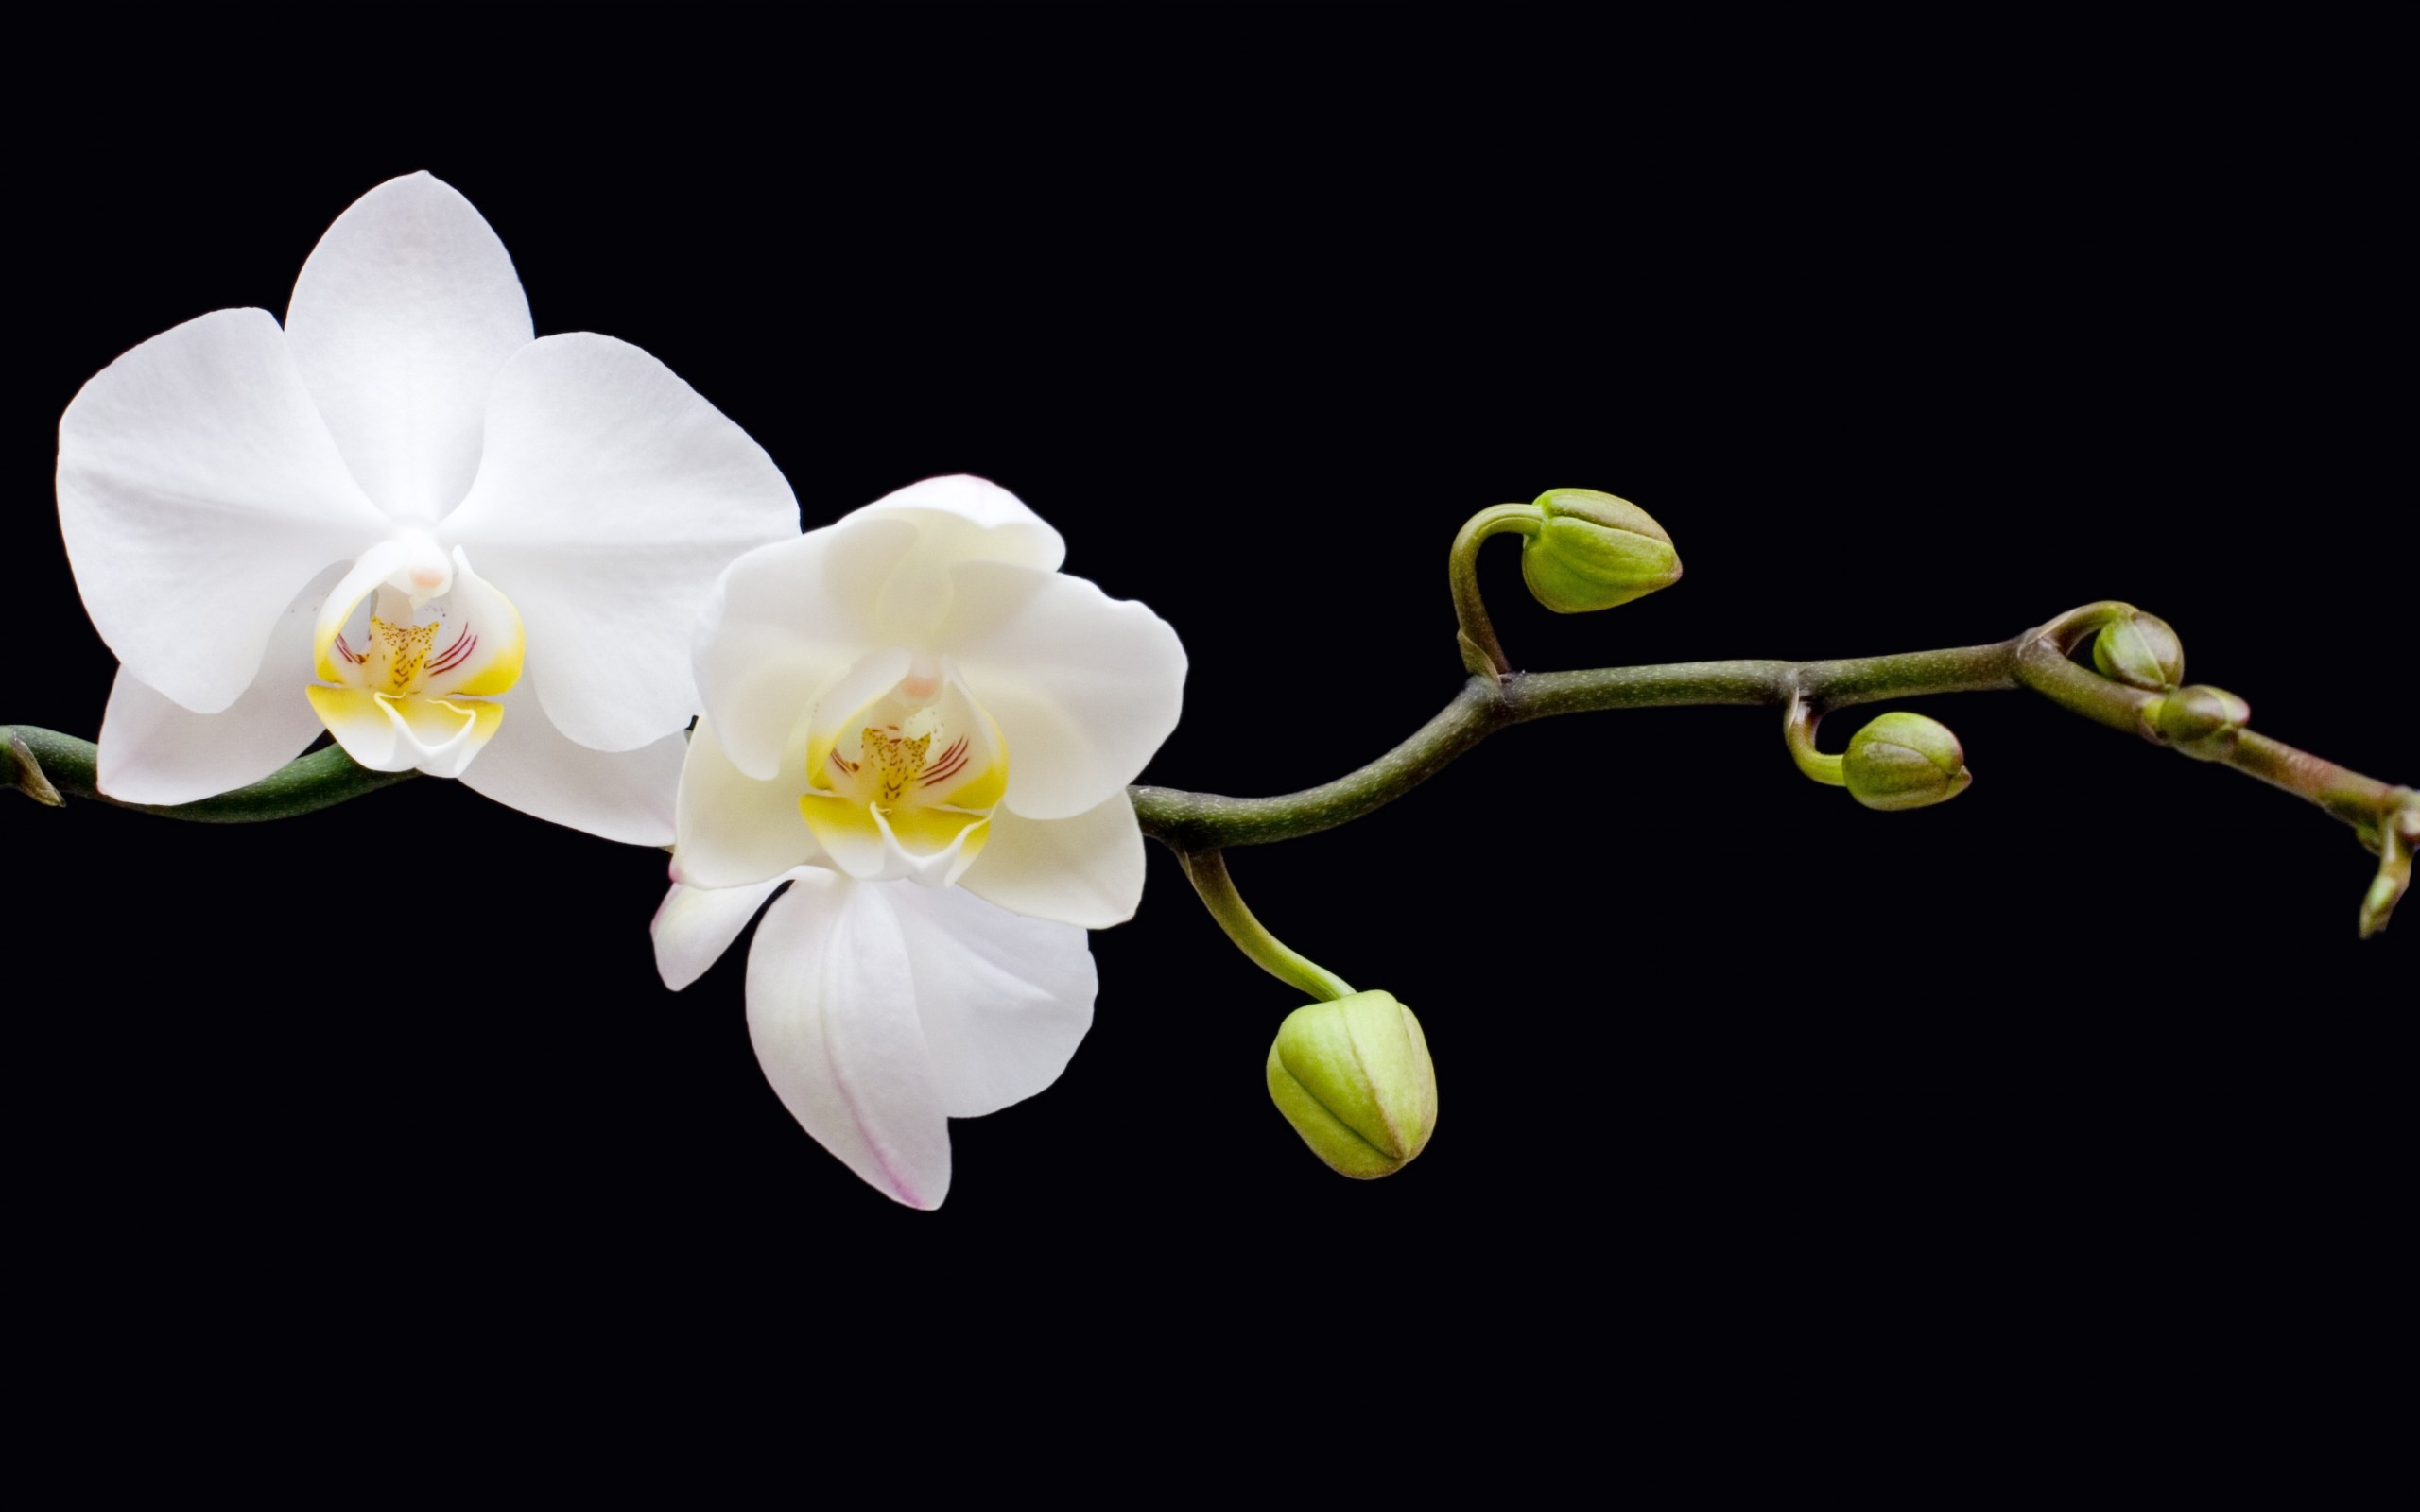 Скачать обои бесплатно Цветок, Орхидея, Белый Цветок, Земля/природа, Флауэрсы картинка на рабочий стол ПК